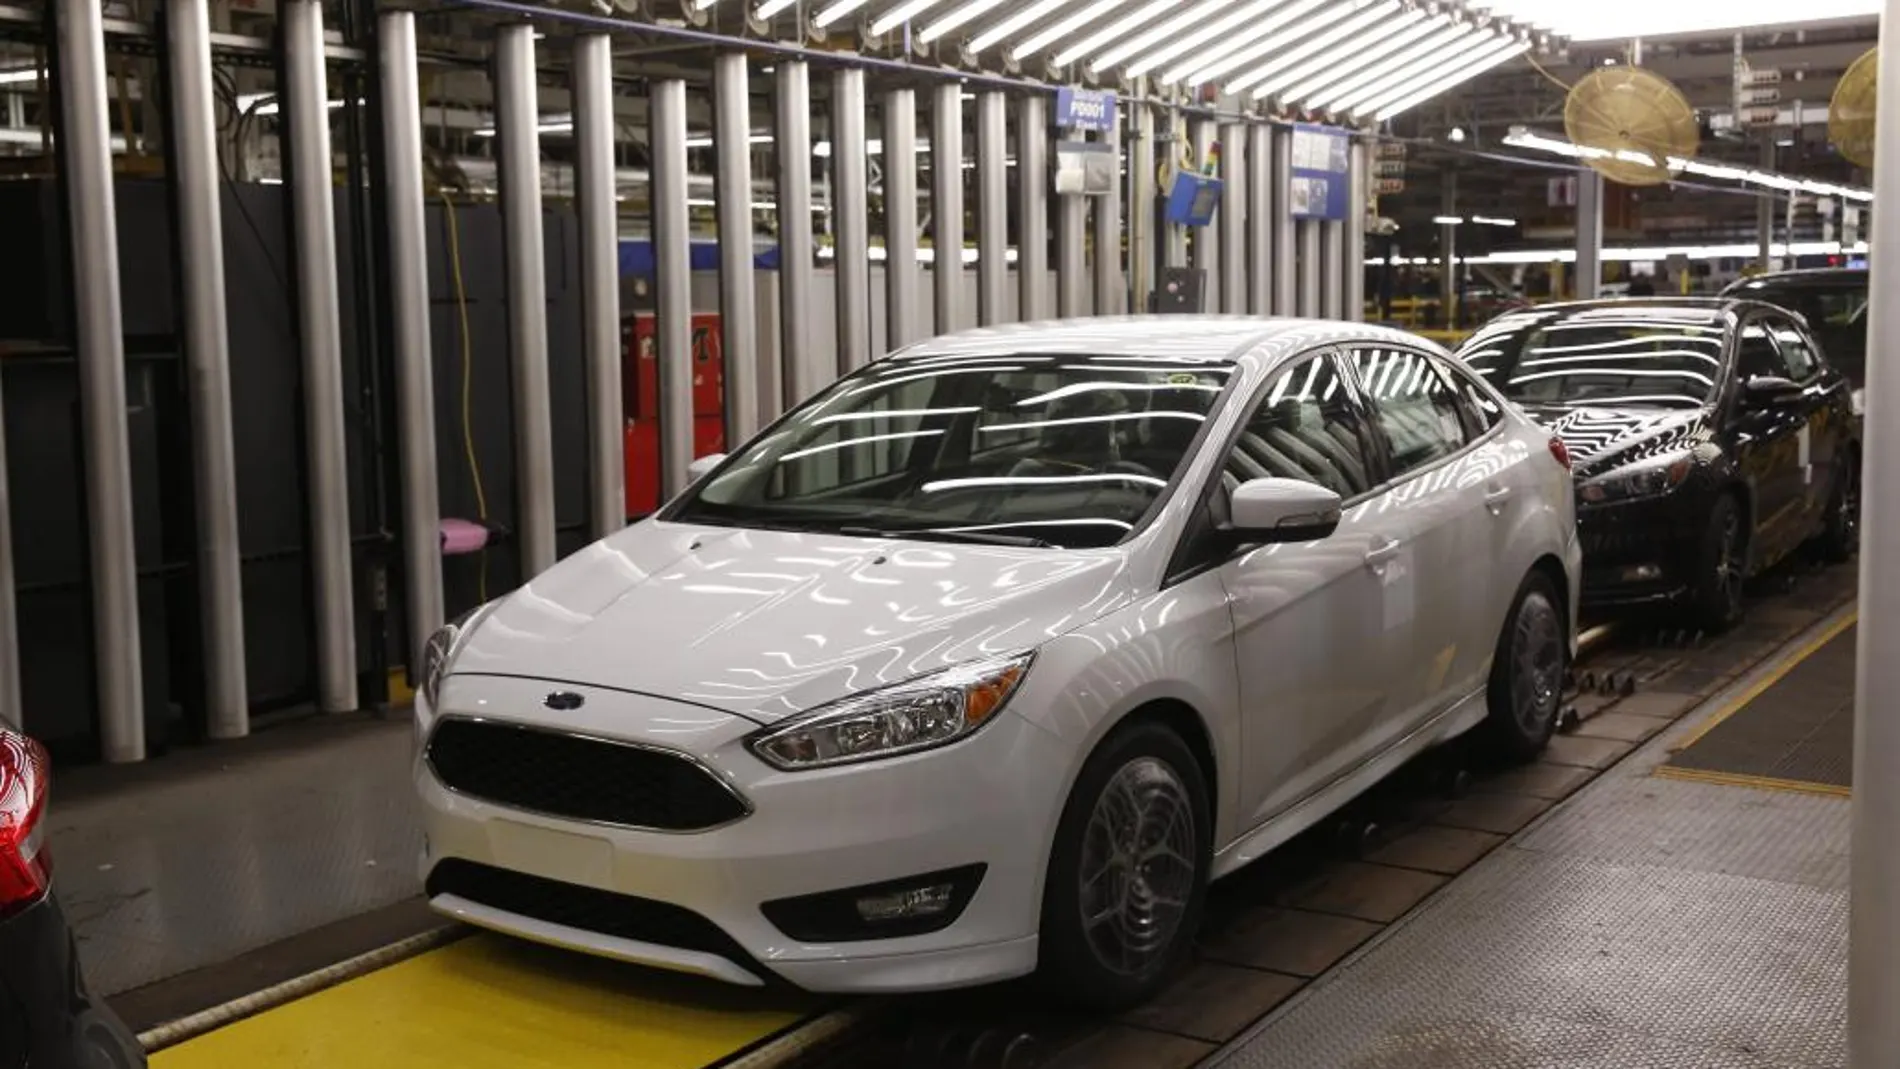 Fotografía de archivo facilitada hoy, 4 de enero de 2017, y fechada el 7 de enero de 2015 que muestra un vehículo Ford Focus de la empresa multinacional estadounidense fabricante de automóviles Ford, en una fábrica de de Flat Rock, Michigan, Estados Unidos.